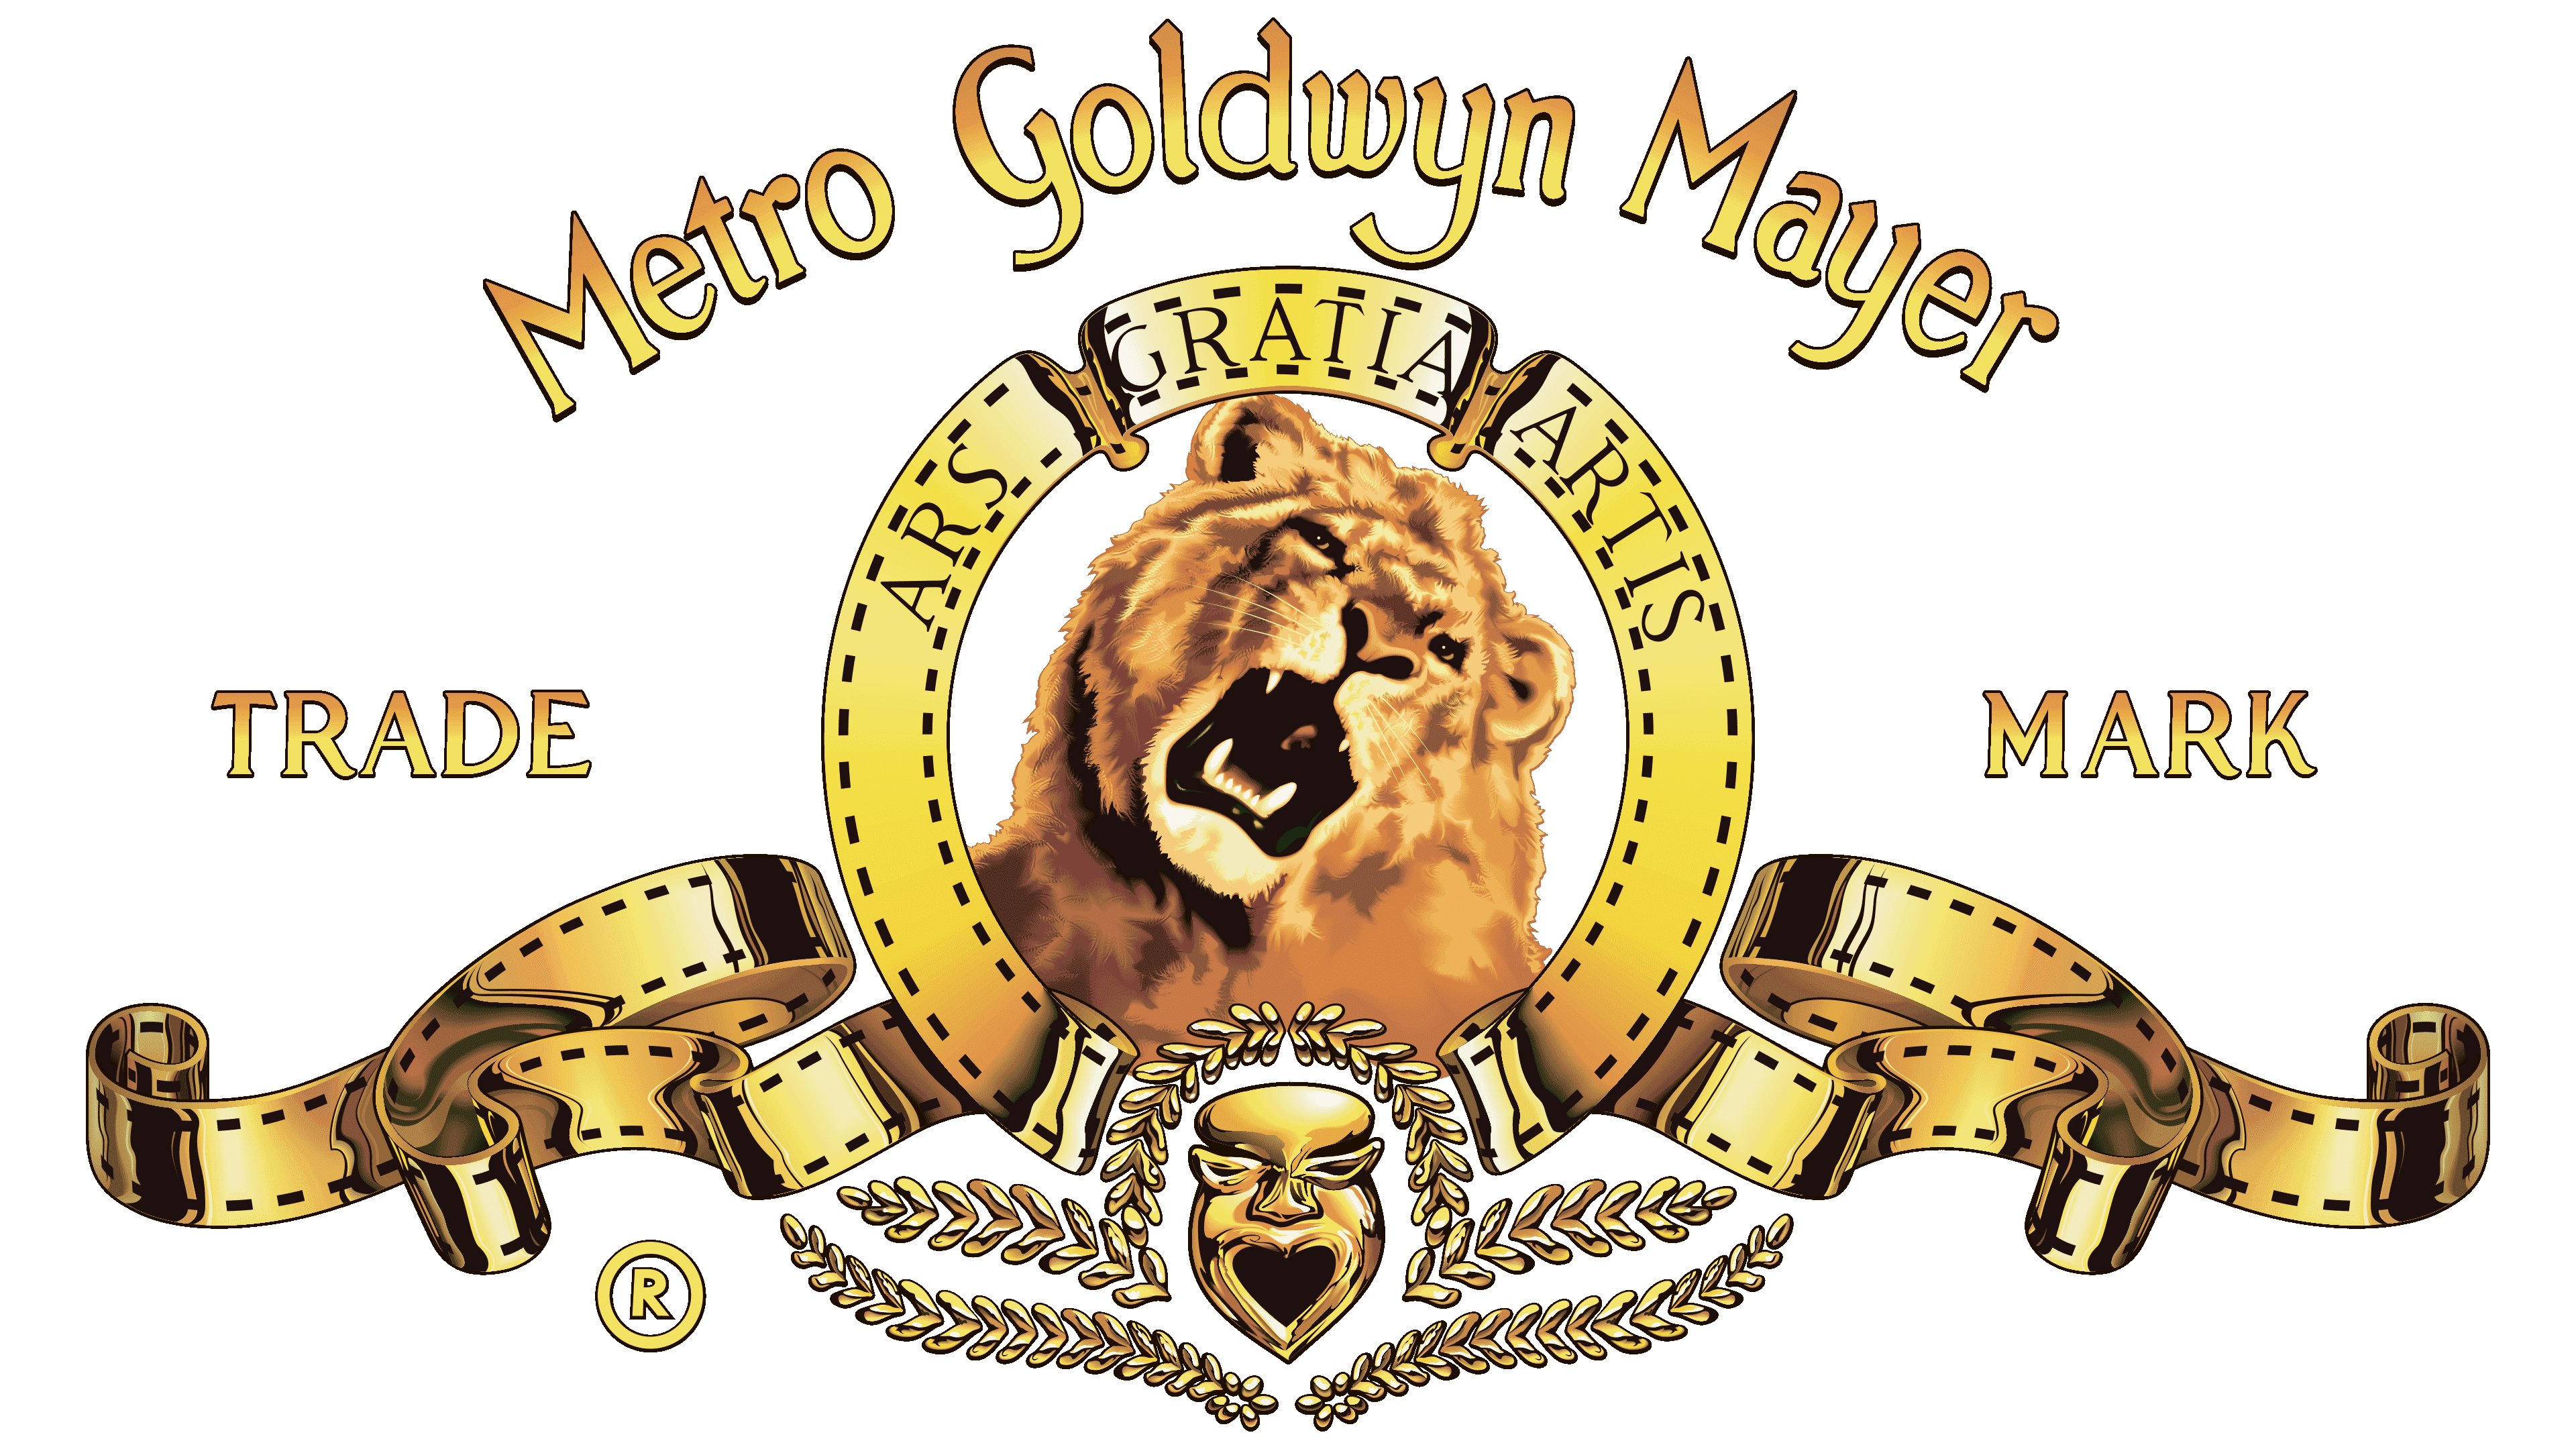 mgm grand logo font